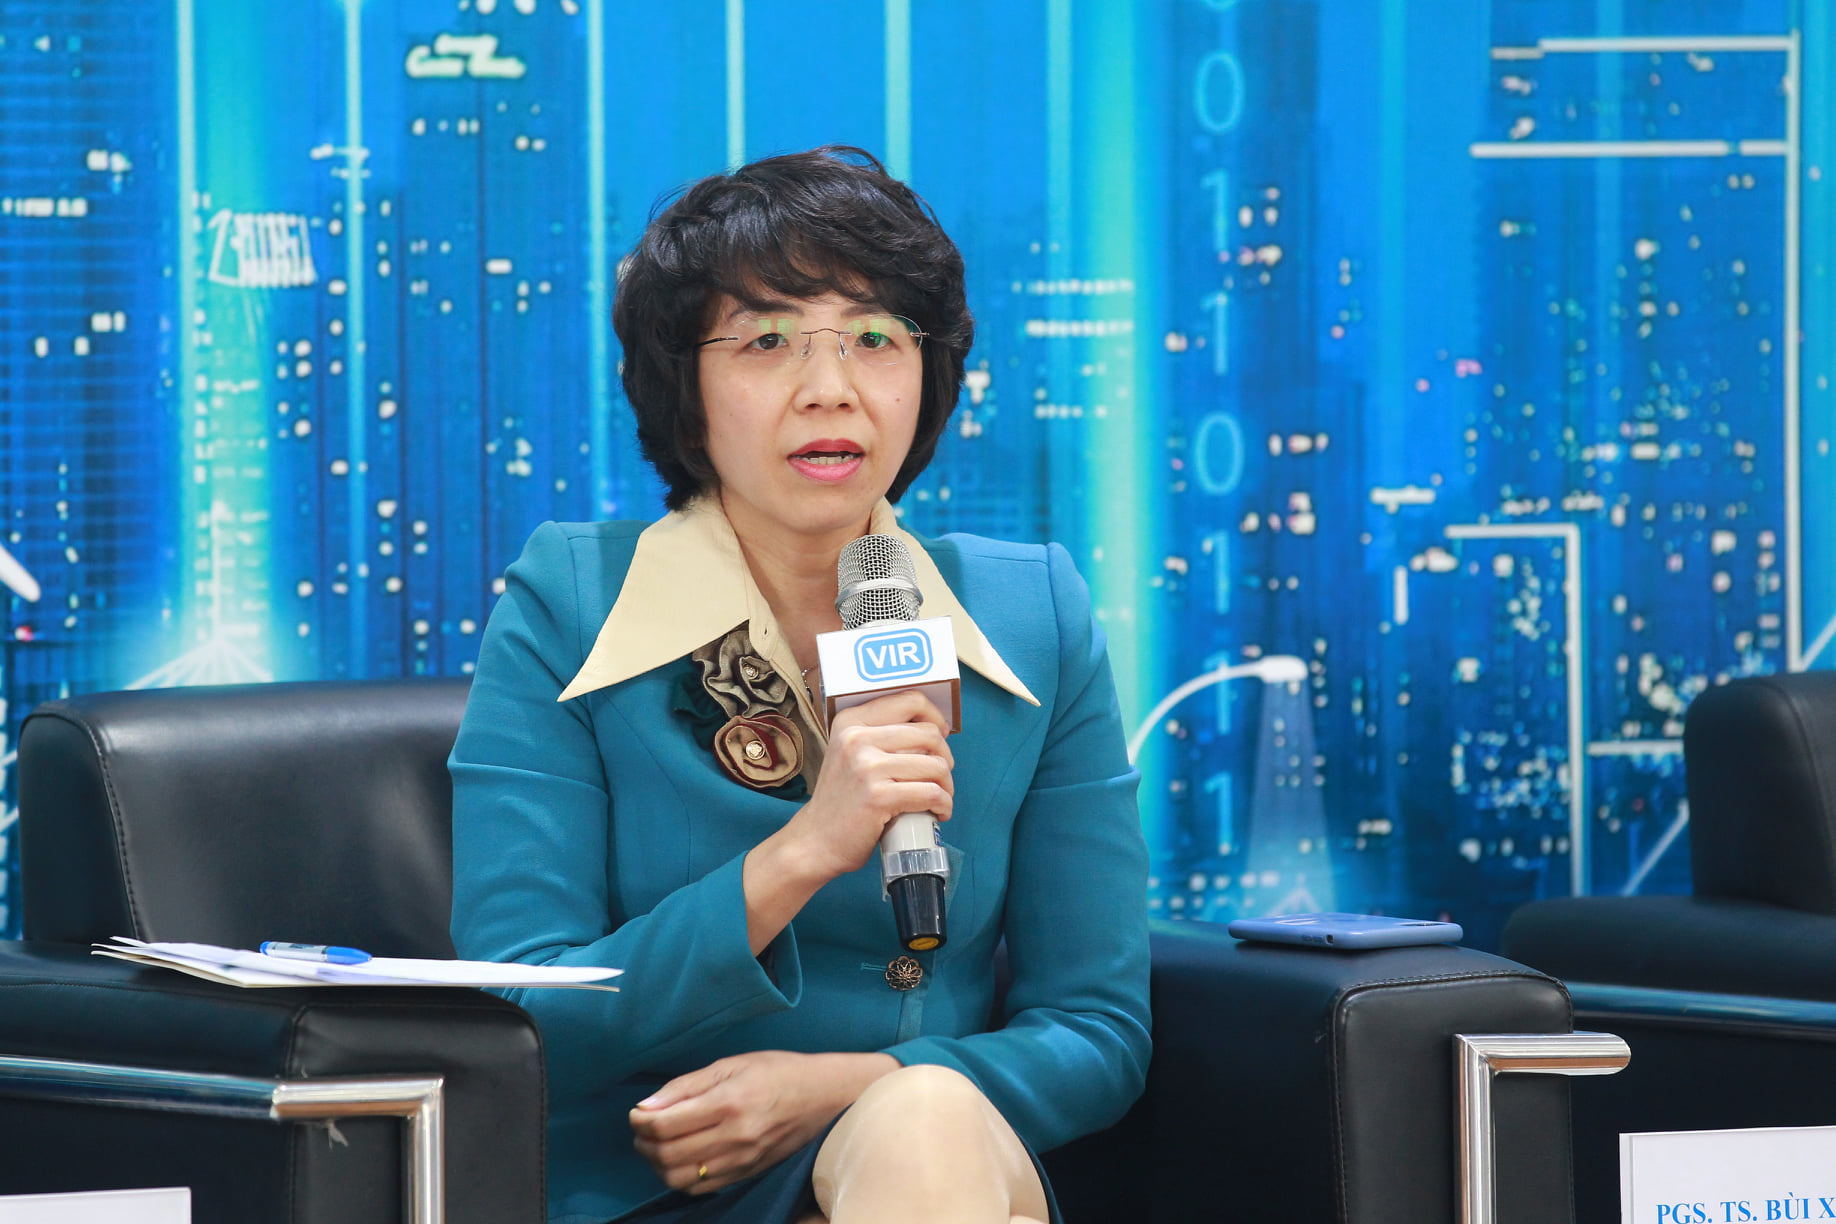 Bà Vũ Quỳnh Lê, Phó cục trưởng Cục Quản lý đấu thầu, Bộ Kế hoạch và Đầu tư;